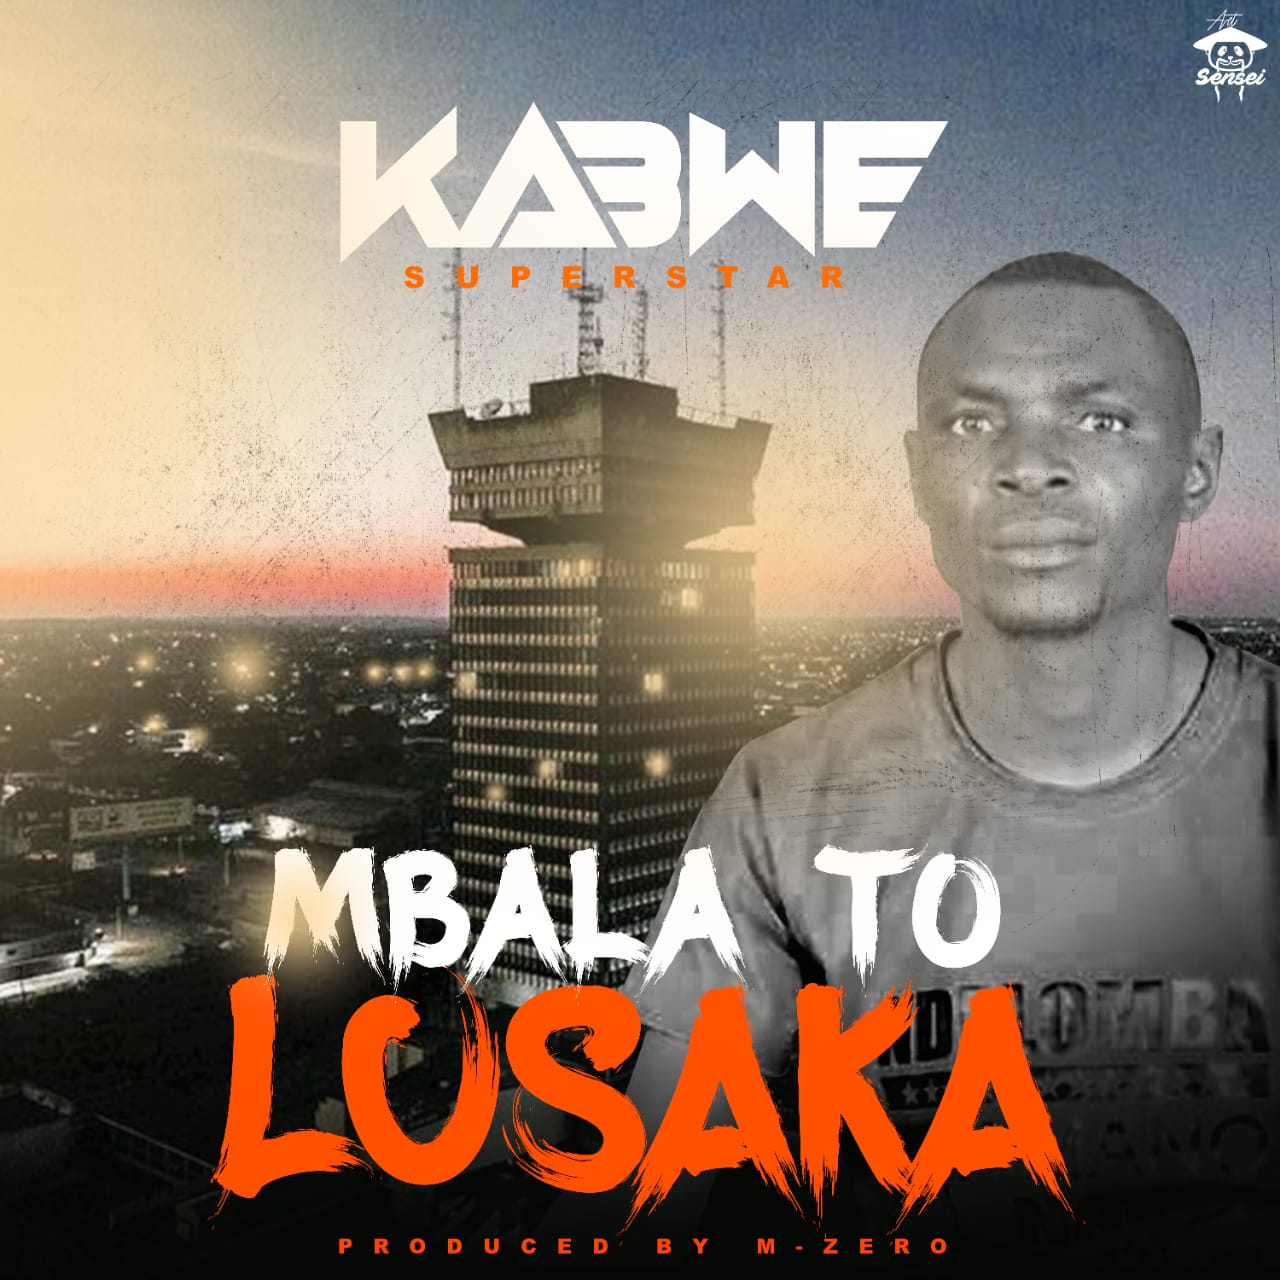 Kabwe Superstar - Mbala to Lusaka